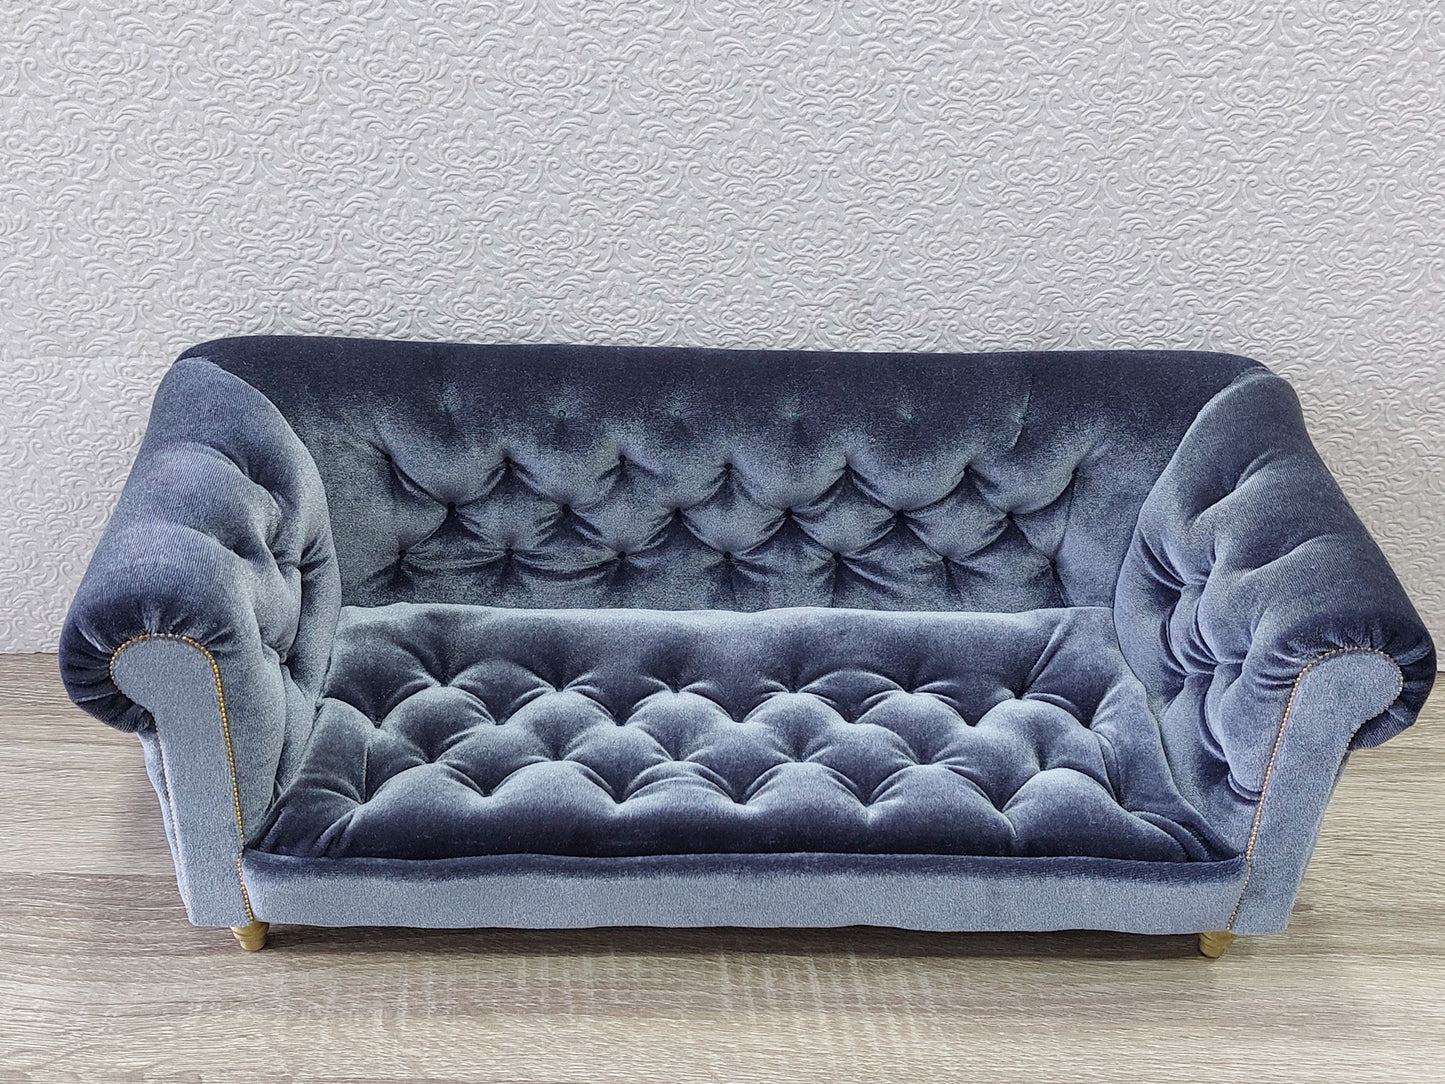 Chesterfield sofa for dolls, gray velvet